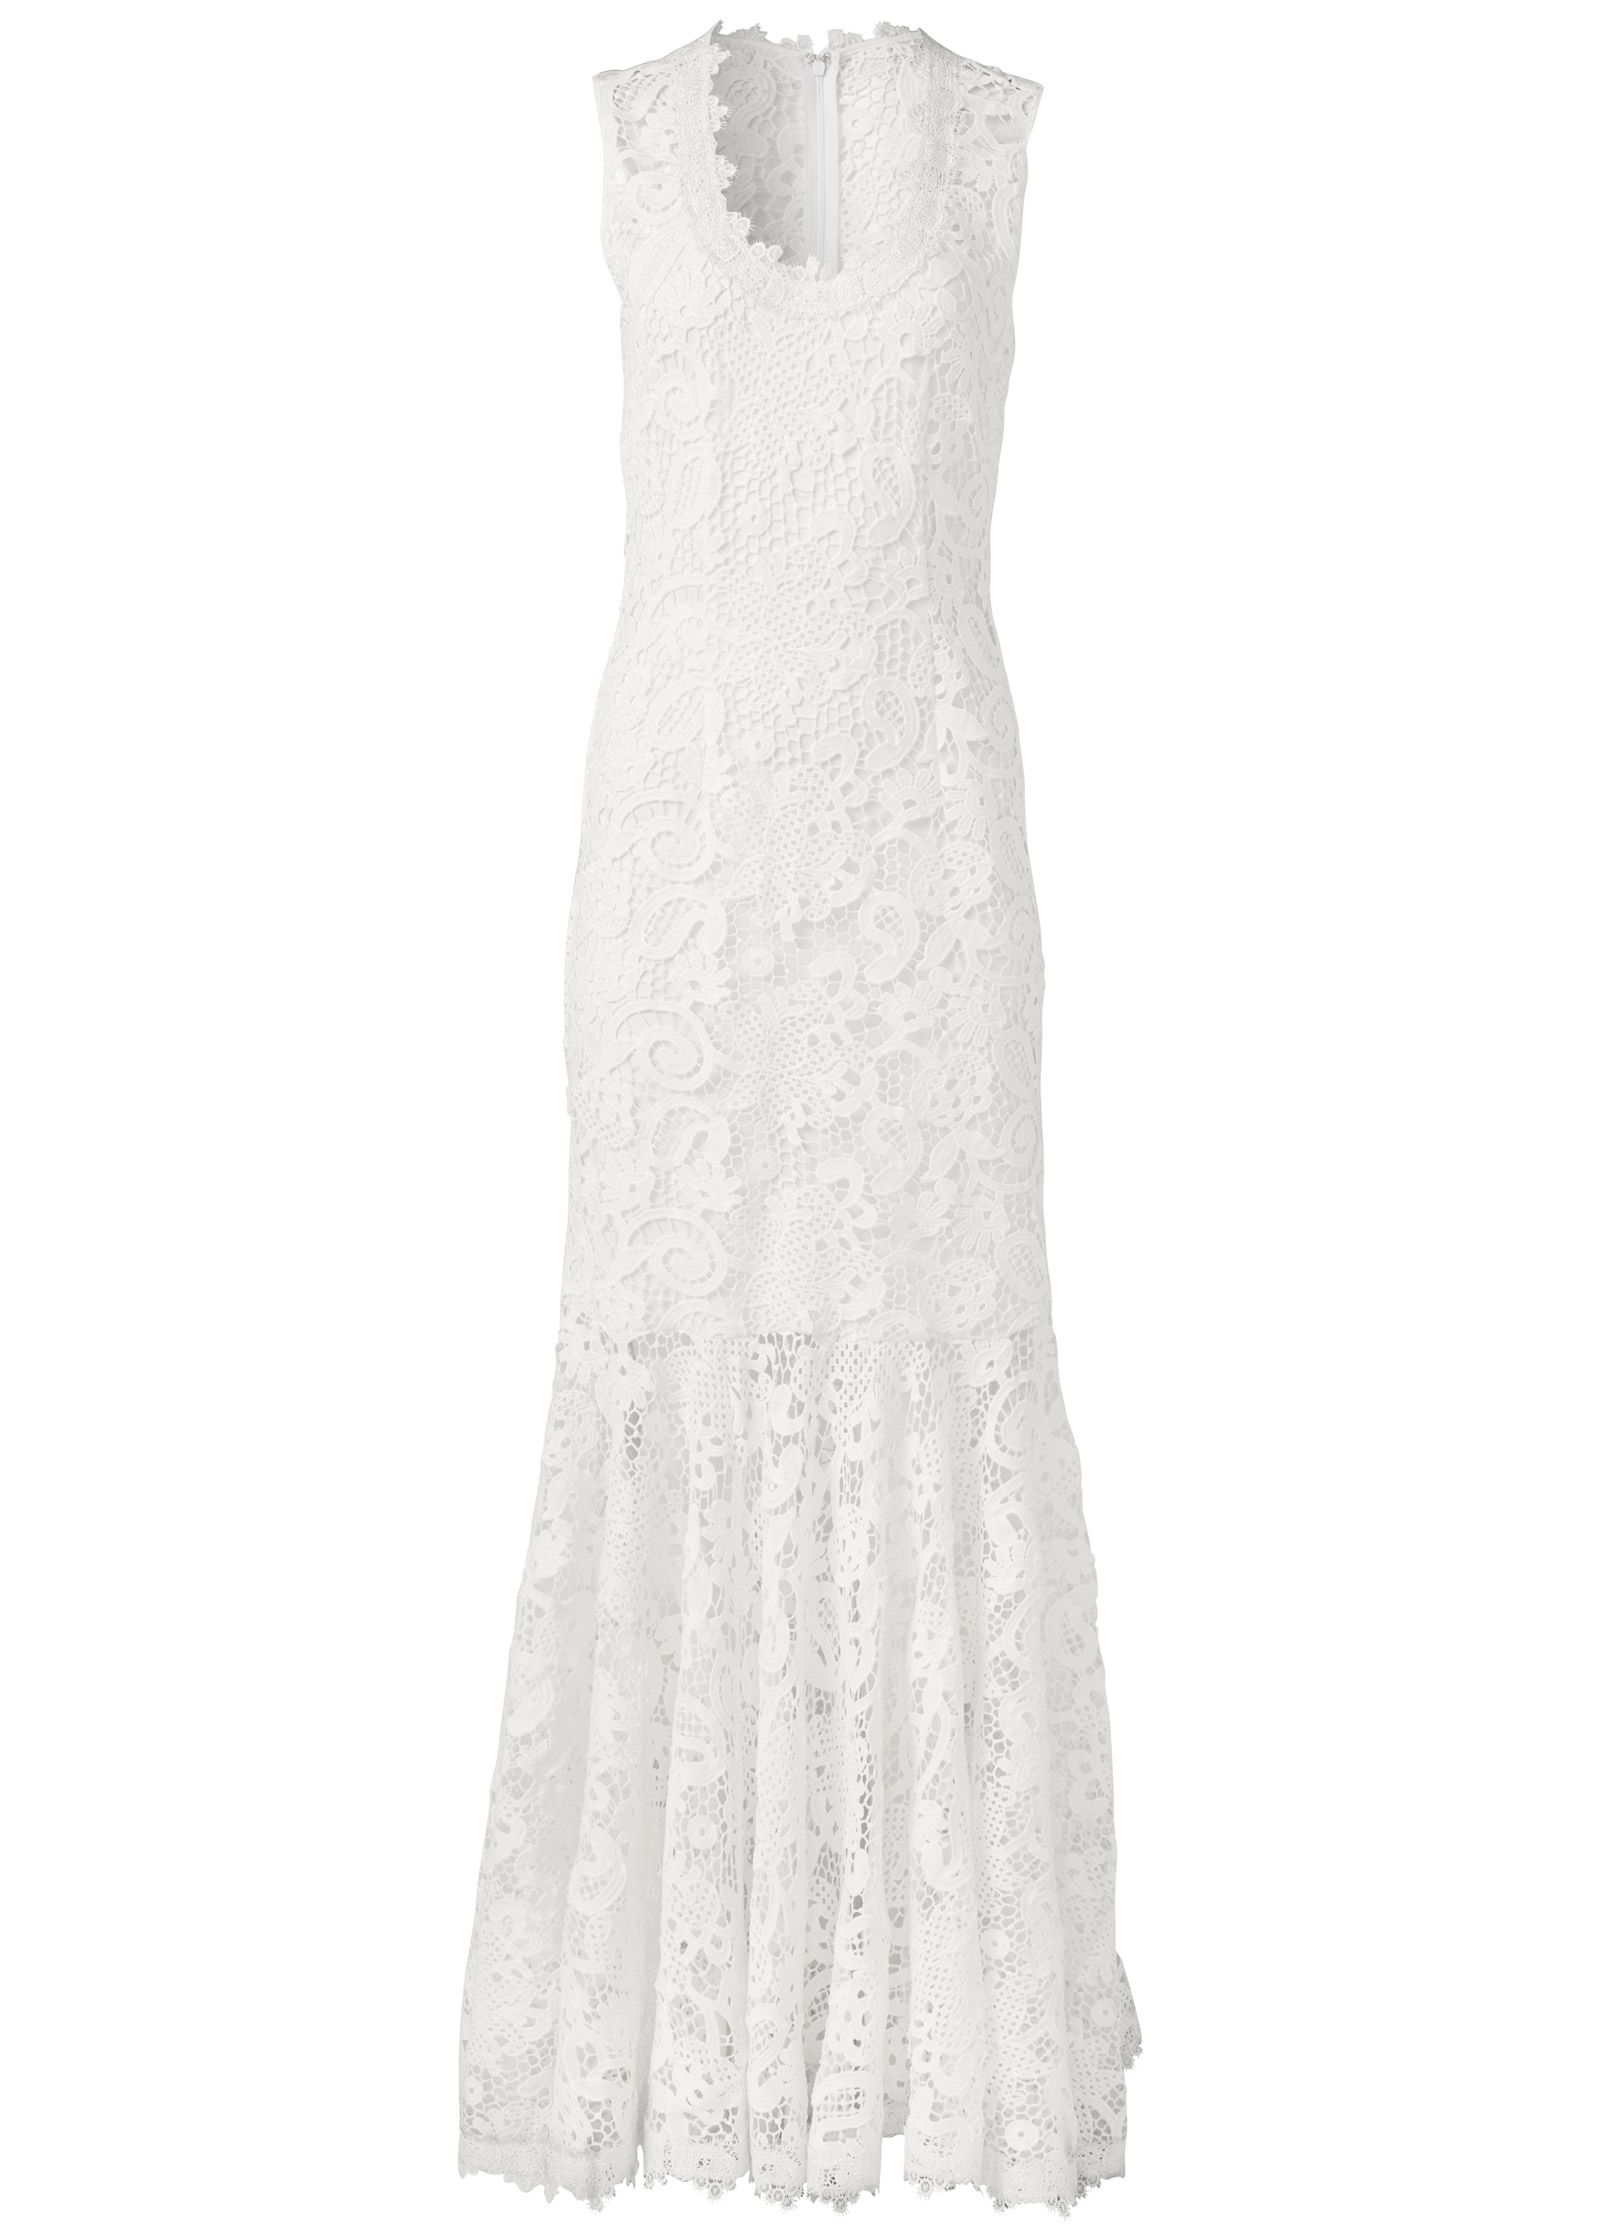 venus white crochet dress